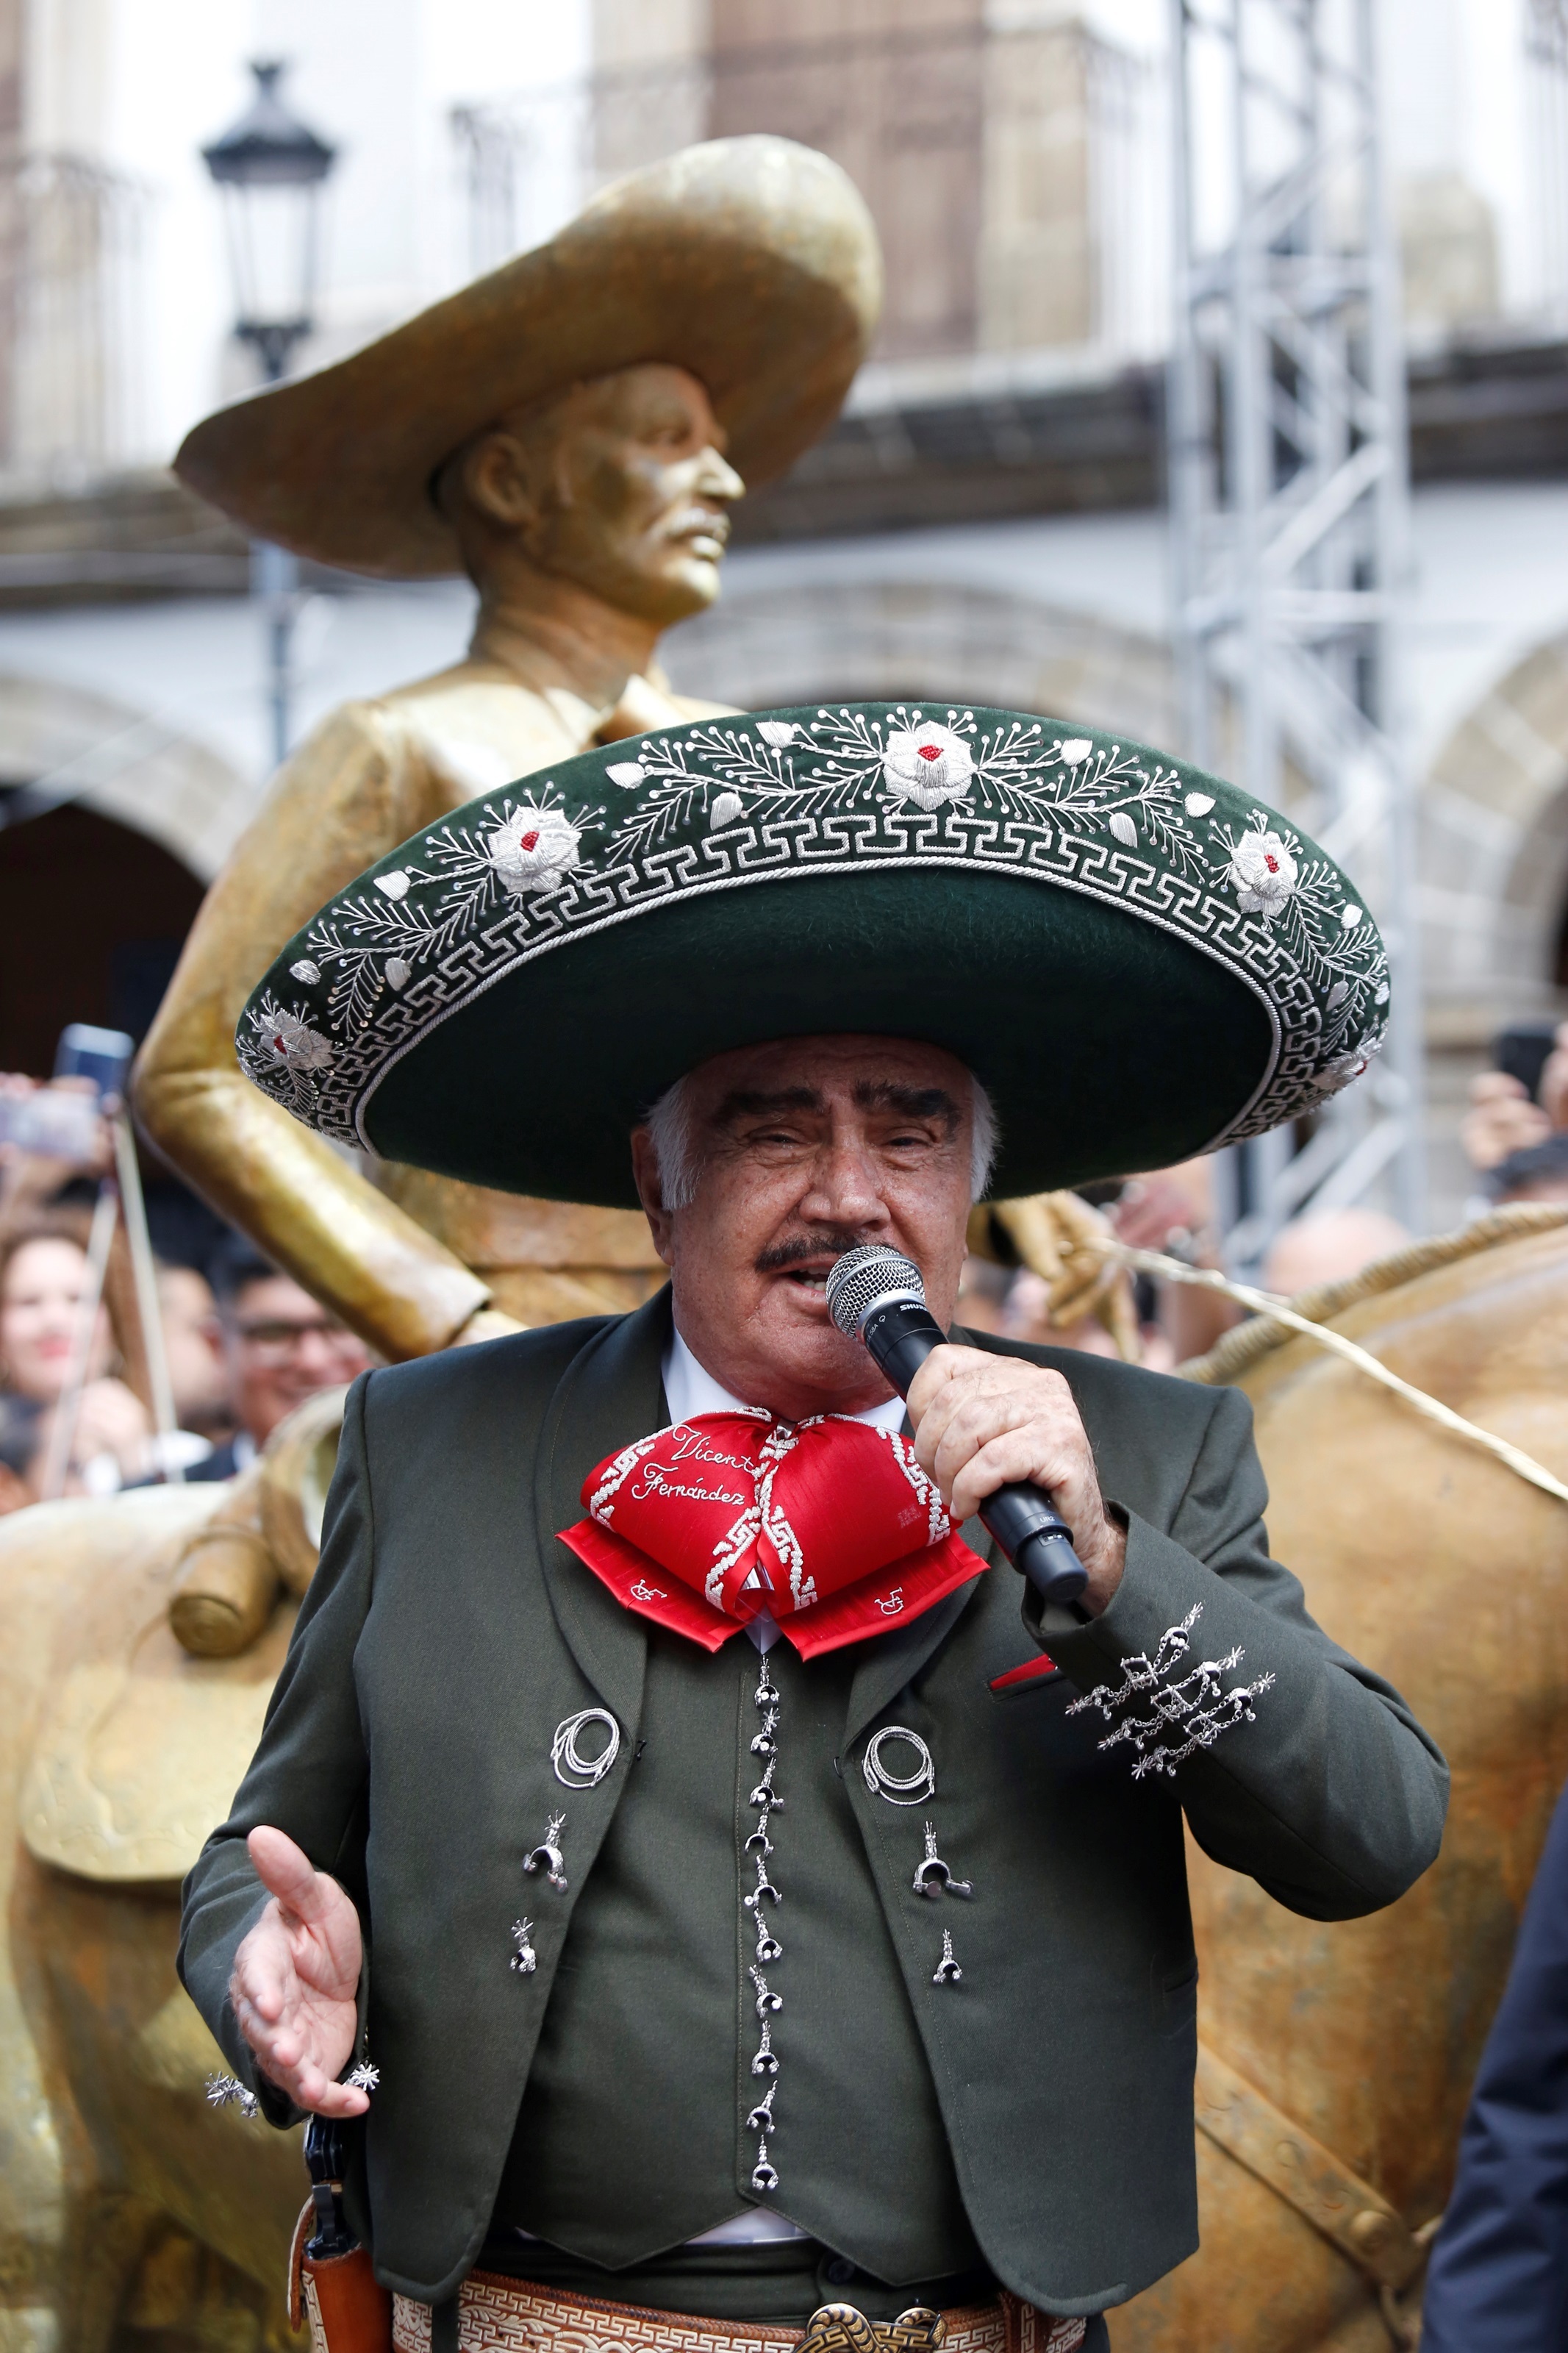 Burro Marchitar Conciliar Vicente Fernández, las canciones del "santo patrono de la música ranchera"  - Infobae